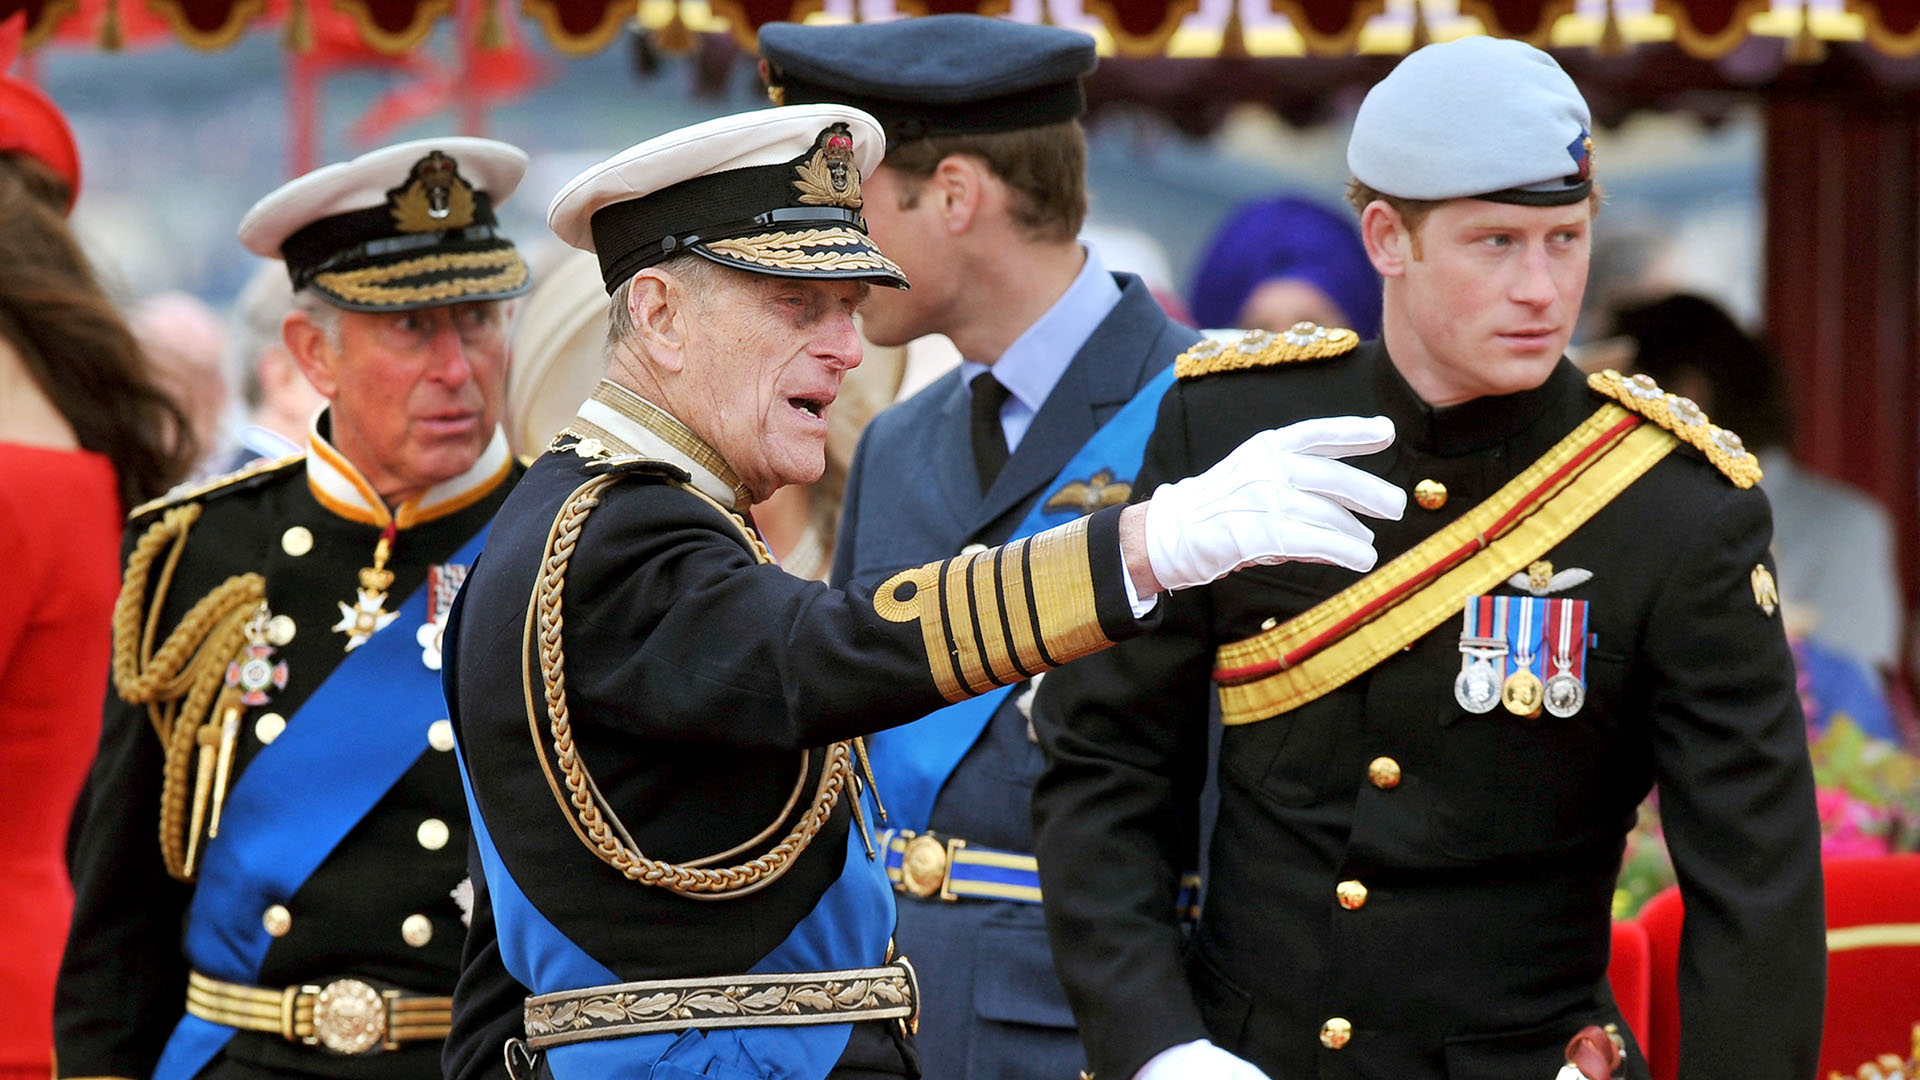 En esta foto de archivo tomada el 3 de junio de 2012, miembros de la Familia Real (de izquierda a derecha) el Príncipe Carlos, el Príncipe Felipe (muerto el pasado 9 de abril), el Príncipe William y el Príncipe Harry hablan a bordo del Spirit of Chartwell durante el Thames Diamond Jubilee en Londres (AFP)